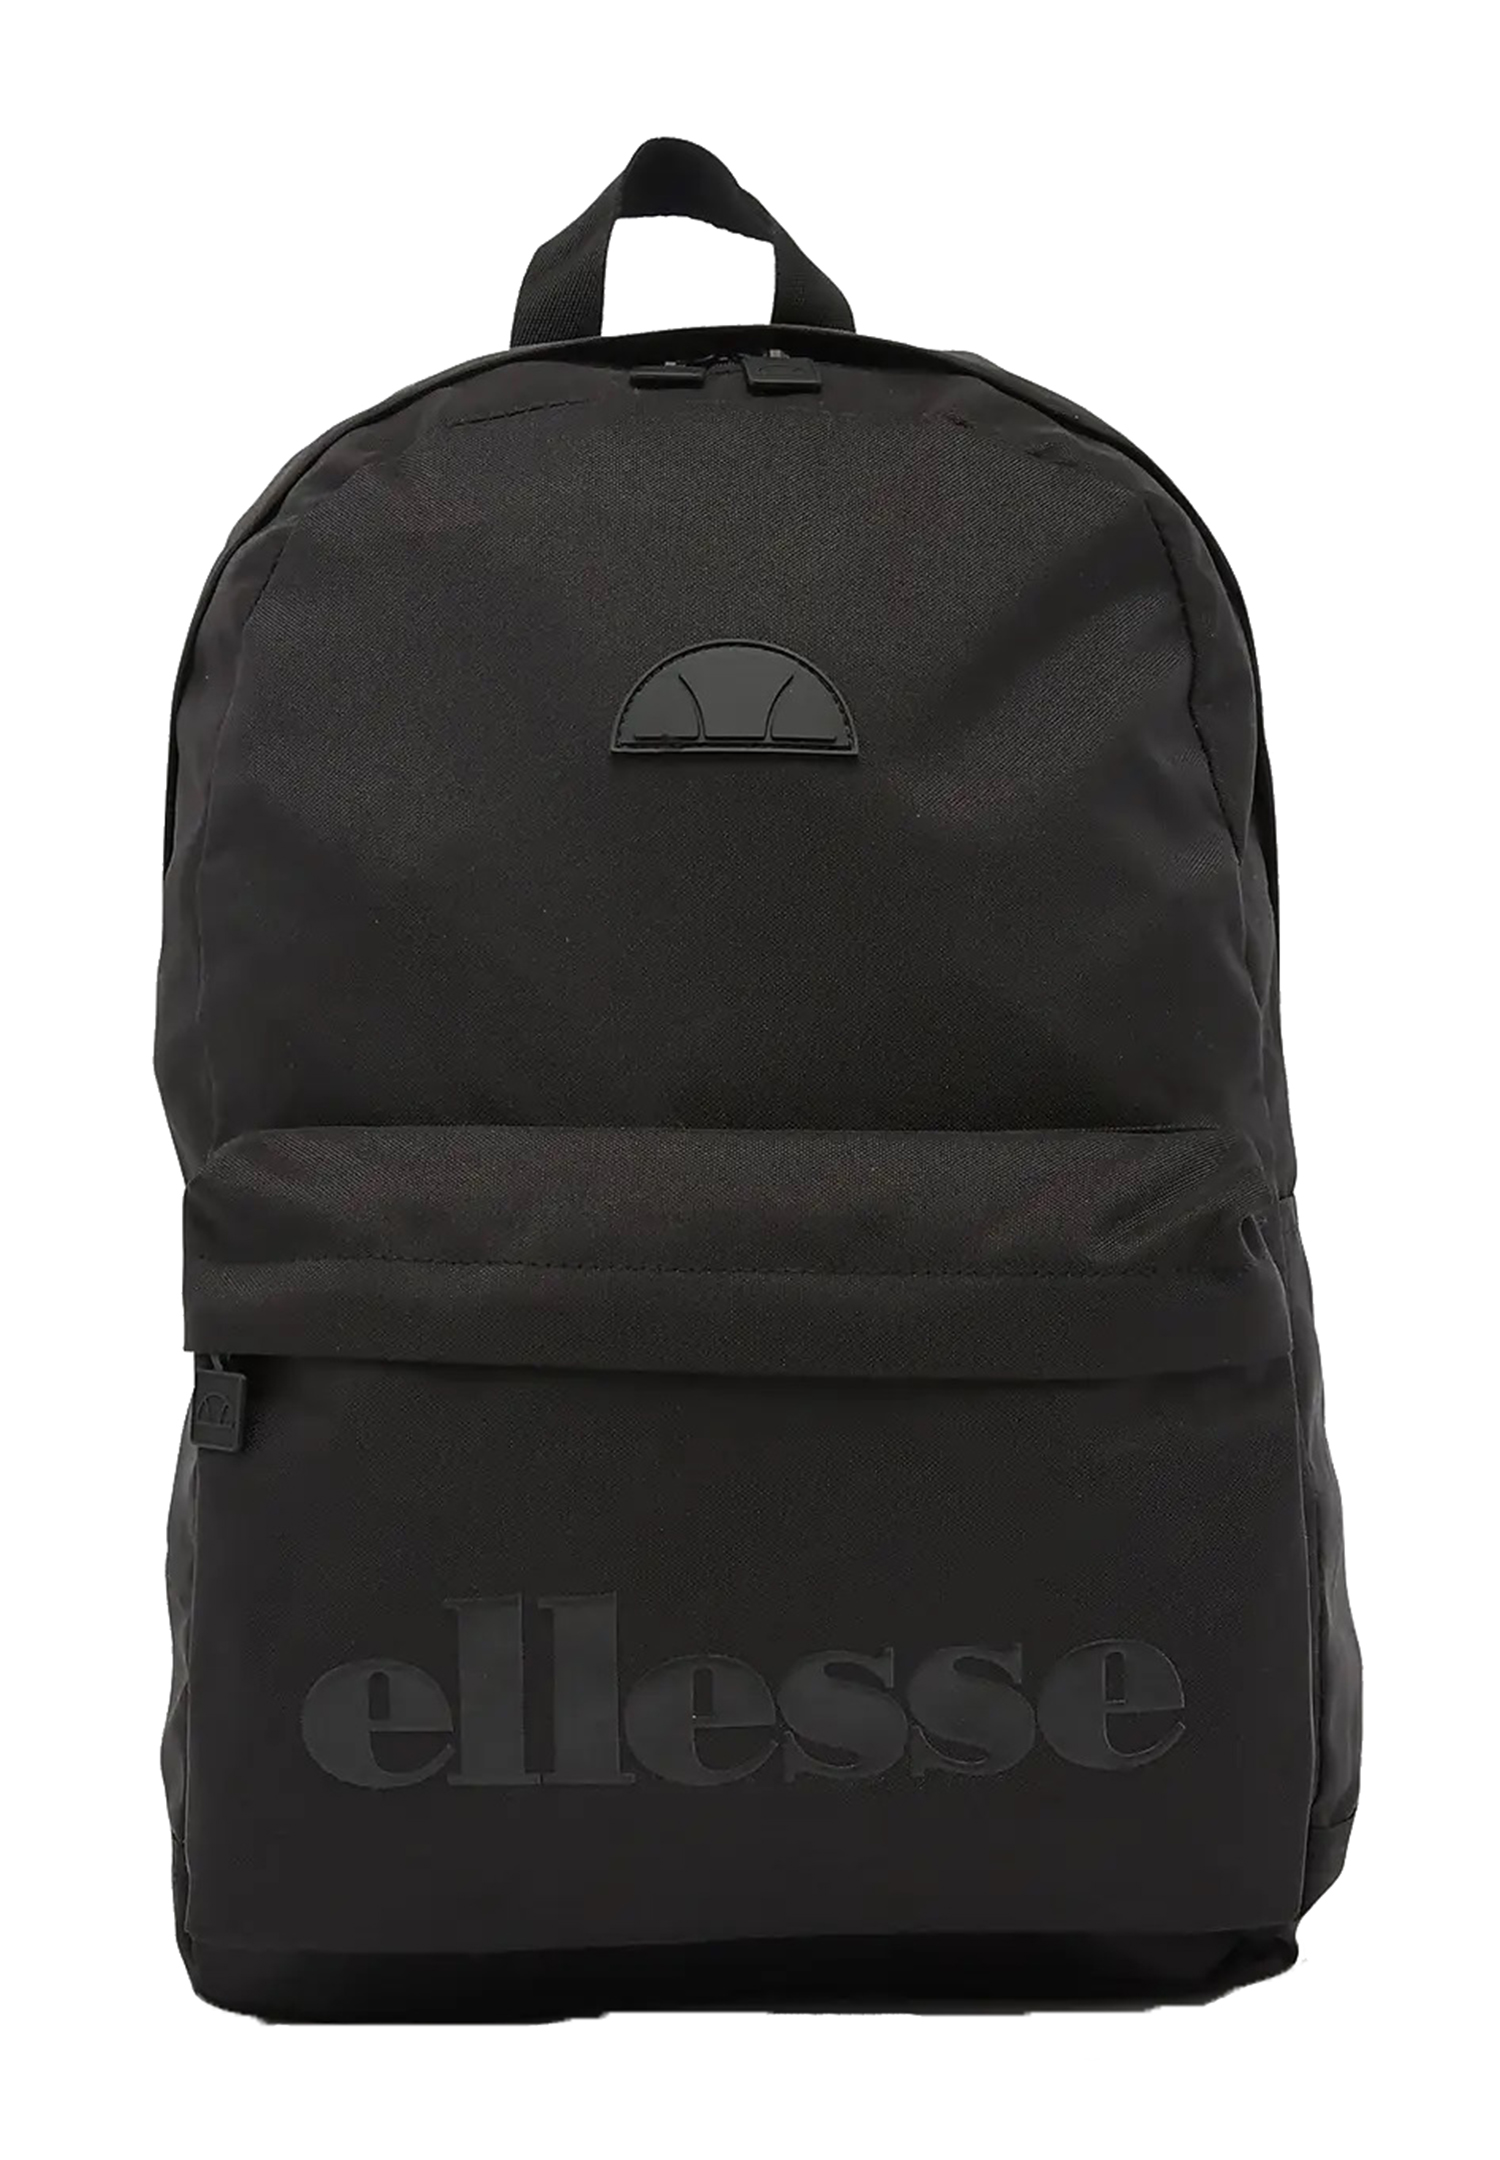 Ellesse Regent Backpack Rucksack Sport Freizeit Reise Schule SAAY0540 schwarz